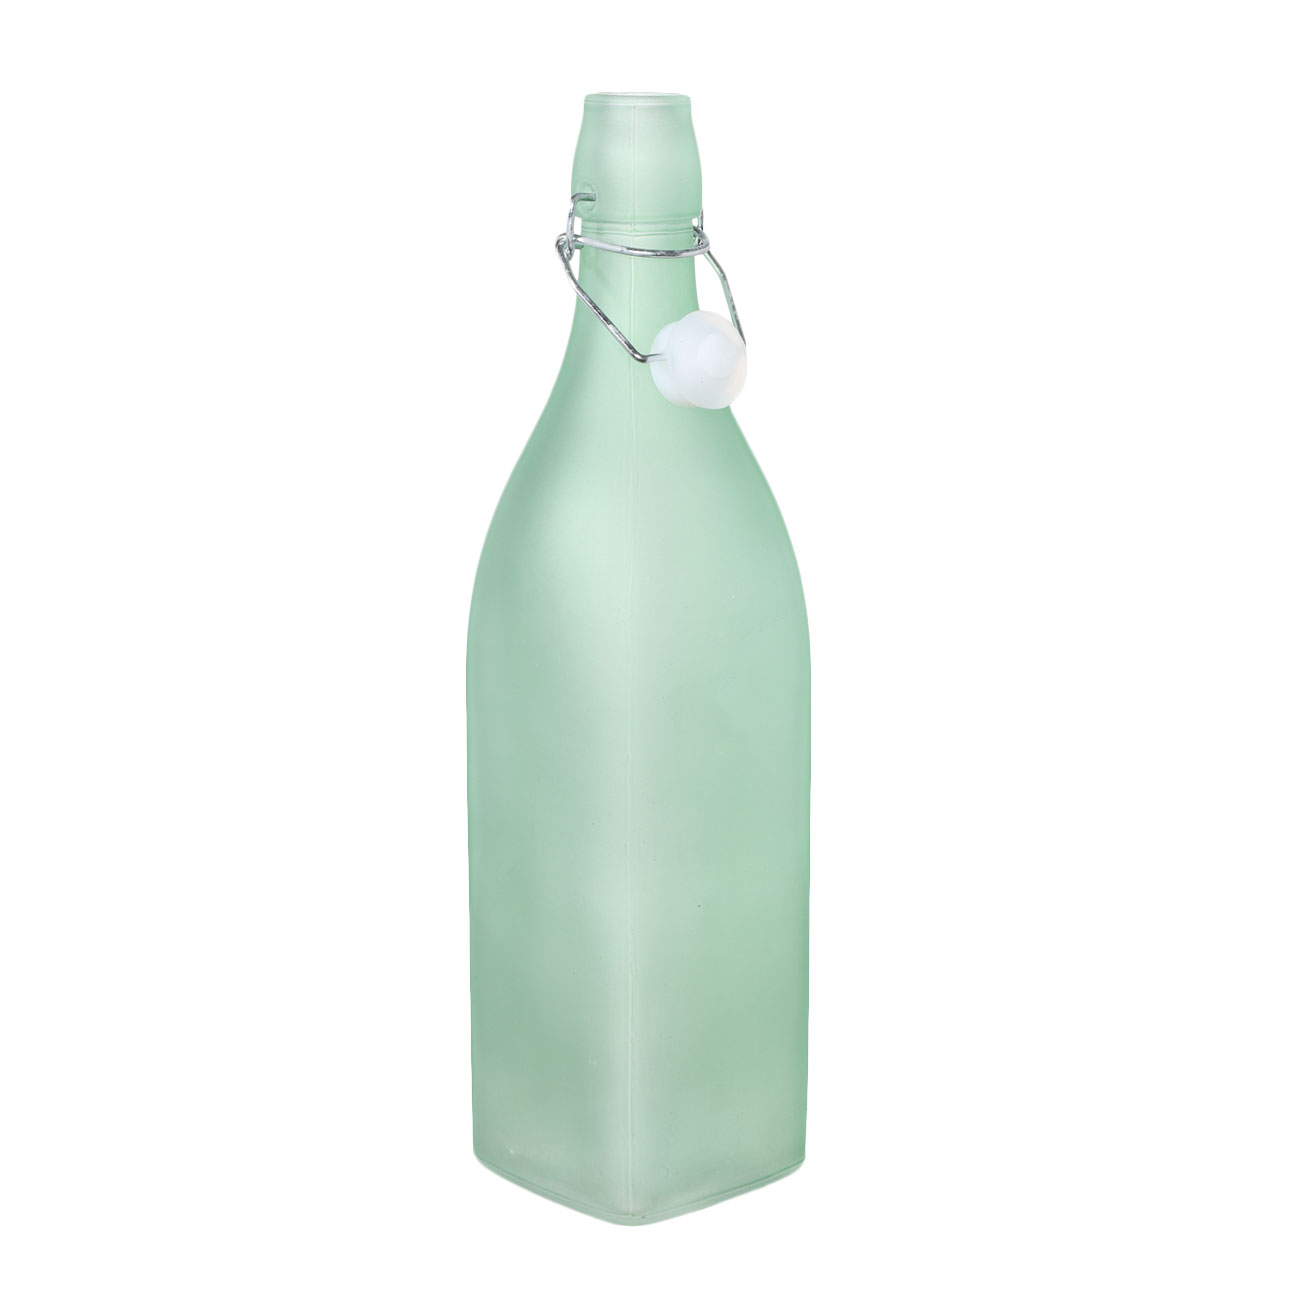 Бутылка для масла или уксуса, 500 мл, с клипсой, стекло/металл, зеленая, Light kitchen изображение № 2